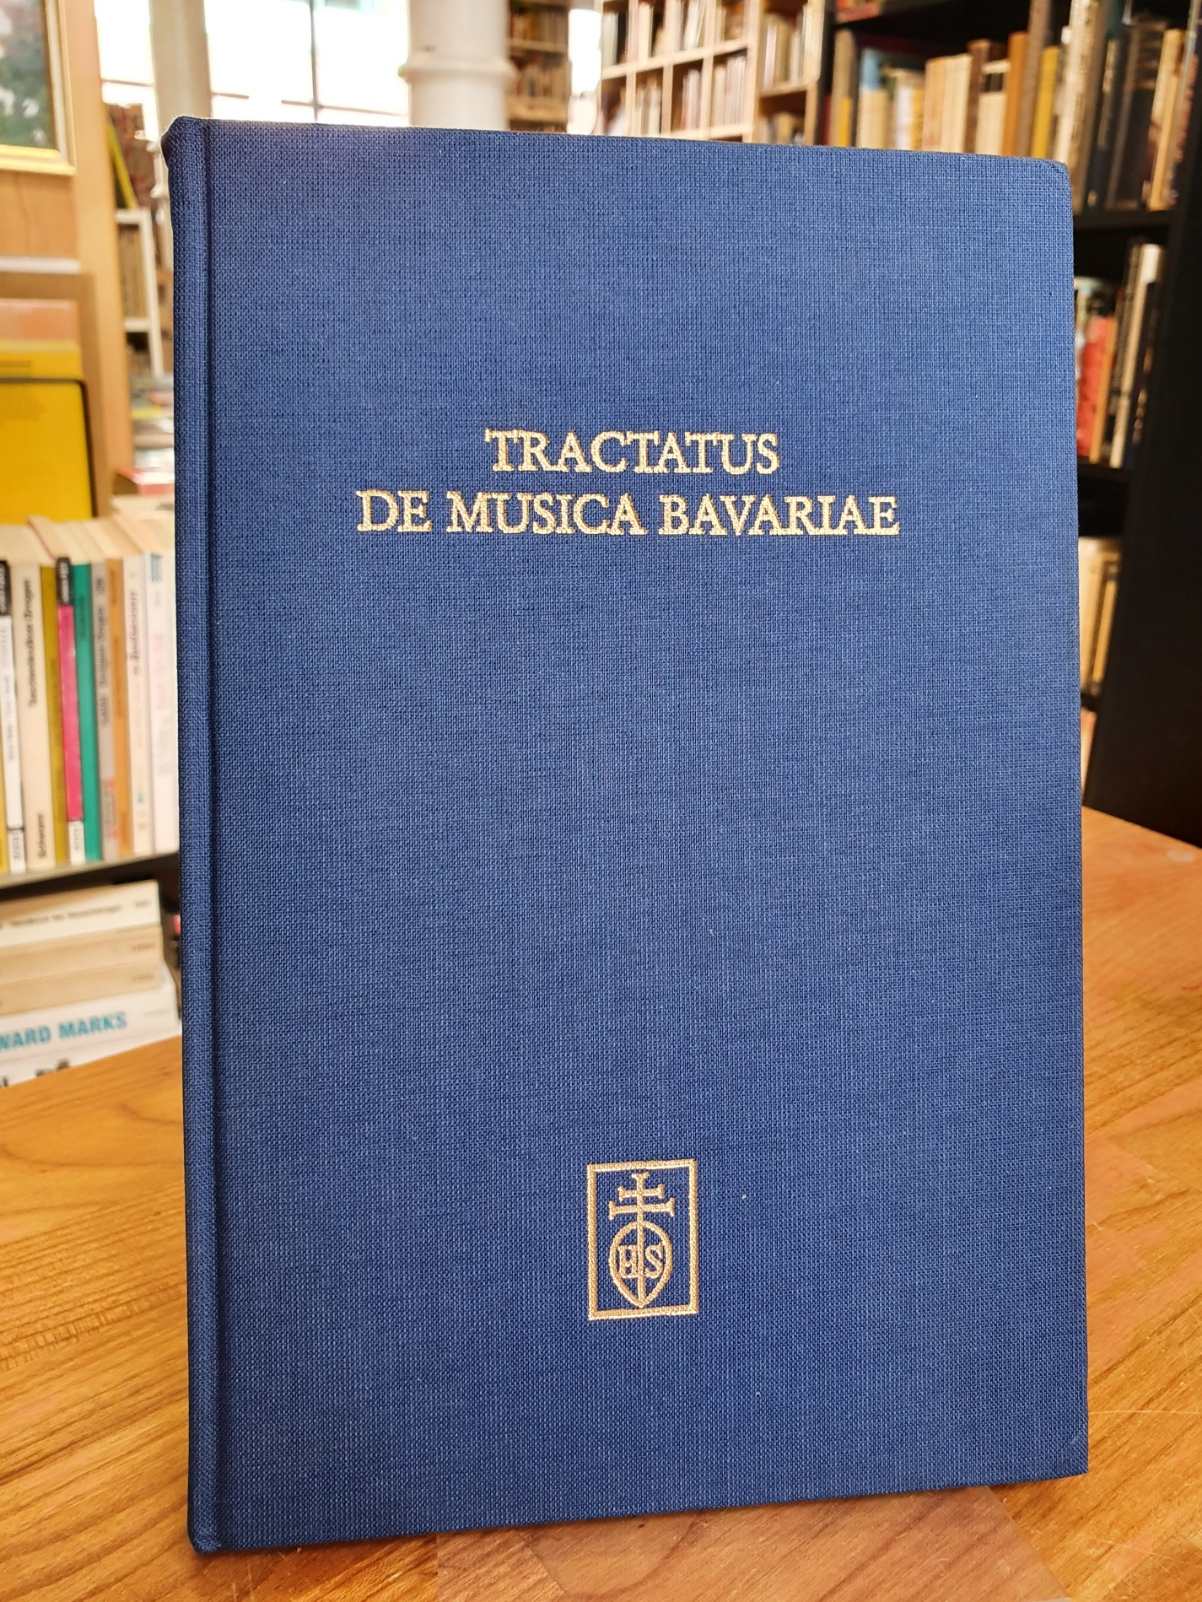 Weiss, Tractatus de musica Bavariae – Festschrift Alexander L. Suder zum 65. Geb